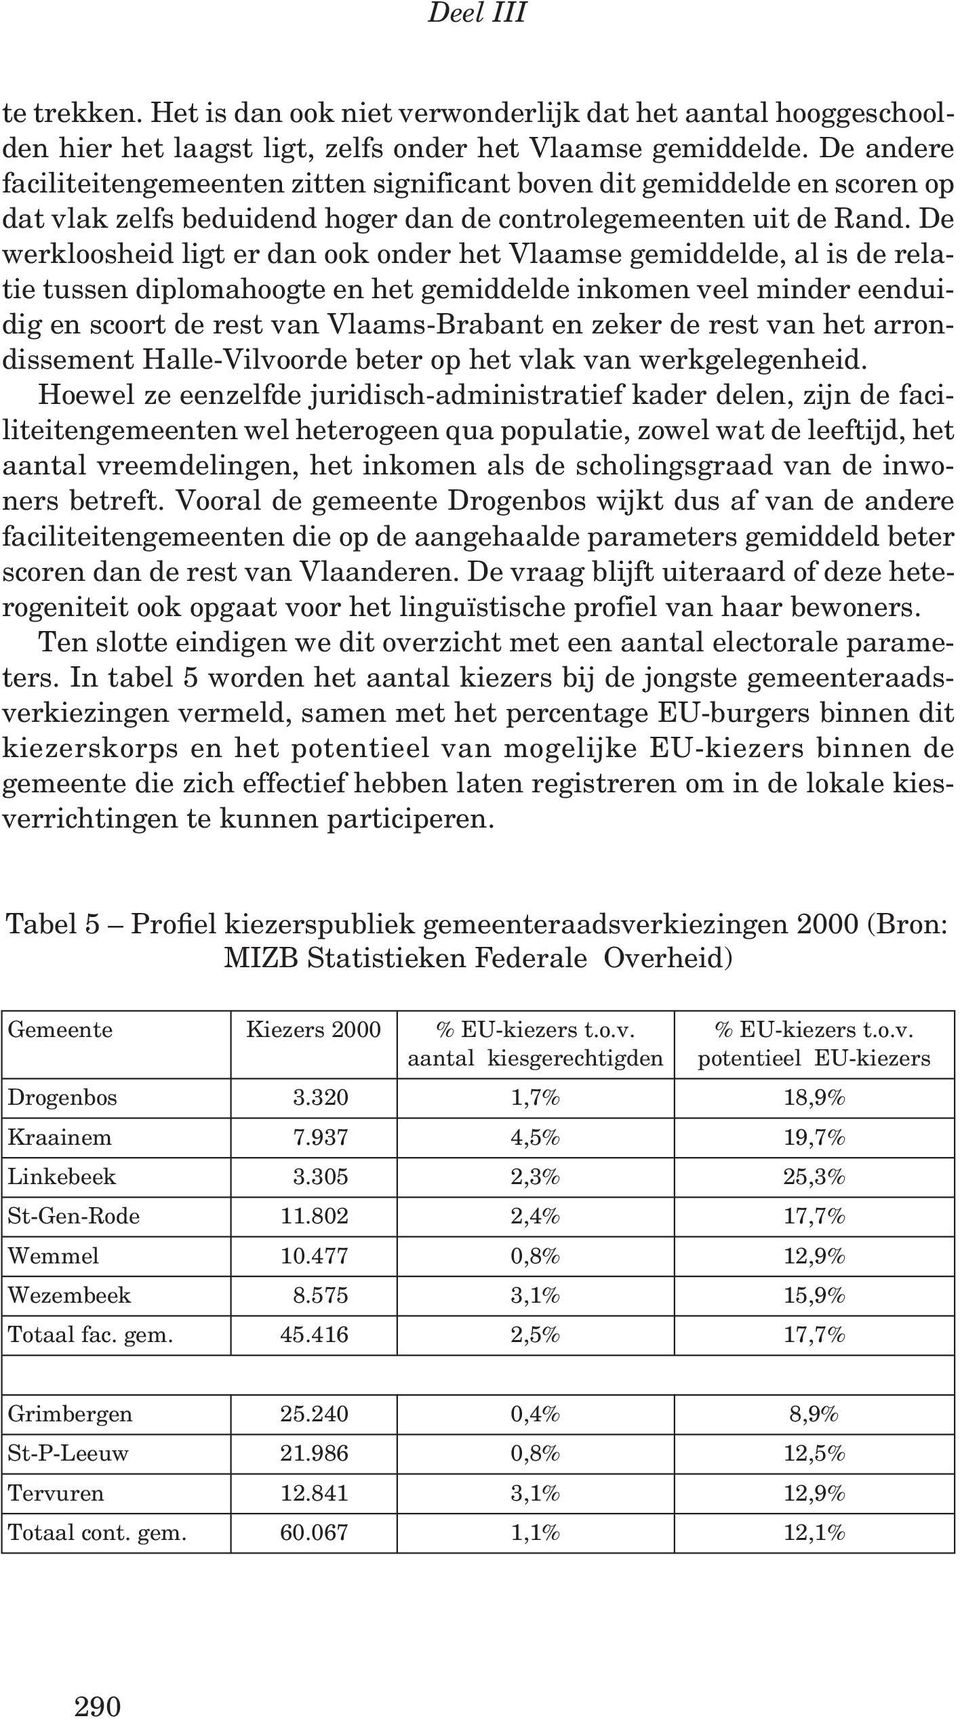 De werkloosheid ligt er dan ook onder het Vlaamse gemiddelde, al is de relatie tussen diplomahoogte en het gemiddelde inkomen veel minder eenduidig en scoort de rest van Vlaams-Brabant en zeker de